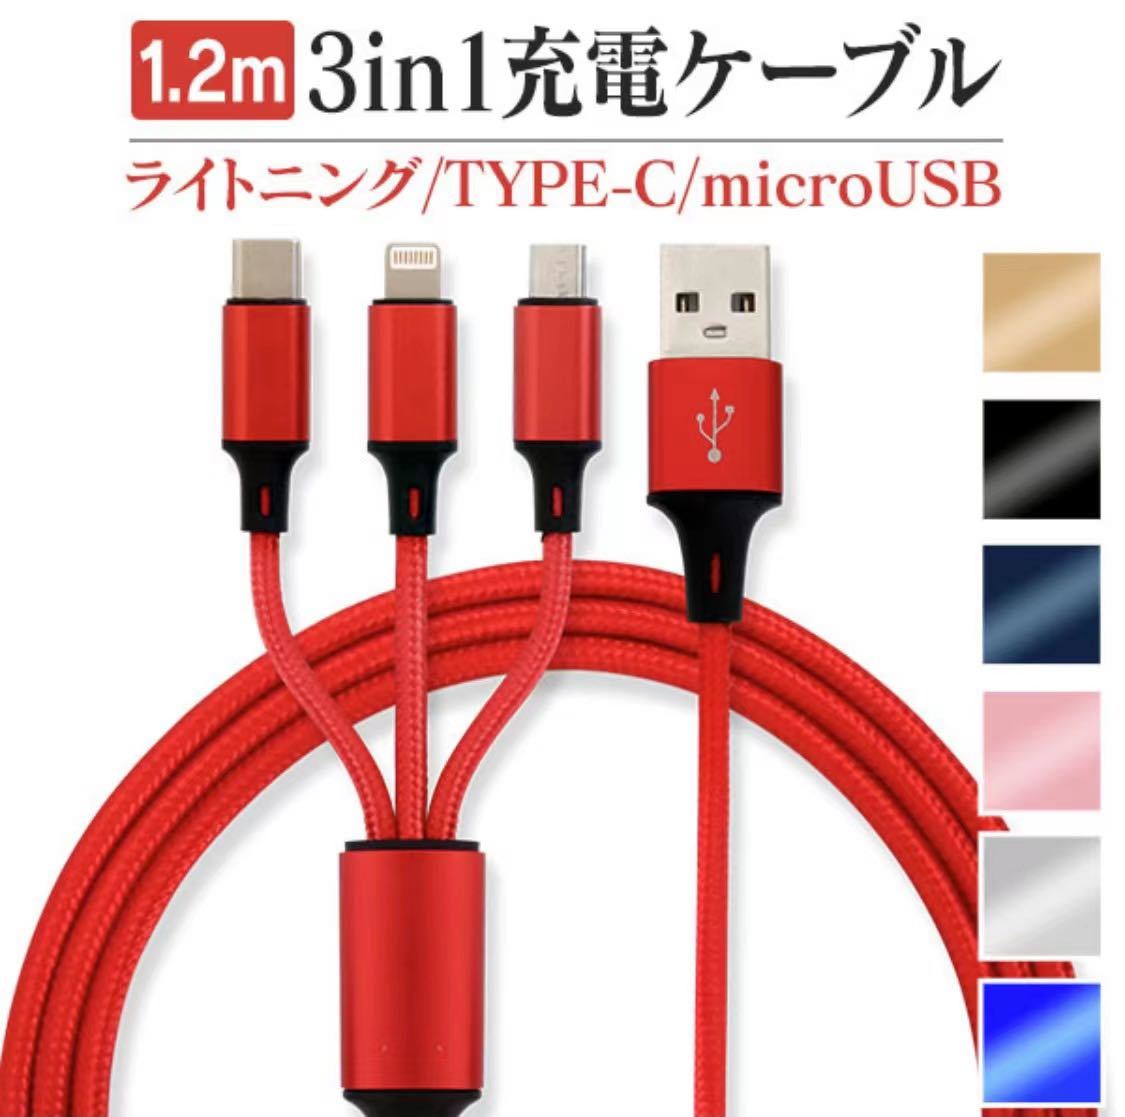 １本3役 Lightning/Micro USB/Type-C 3in1 USB 充電ケーブル 急速充電 ケーブル USBケーブルの画像6